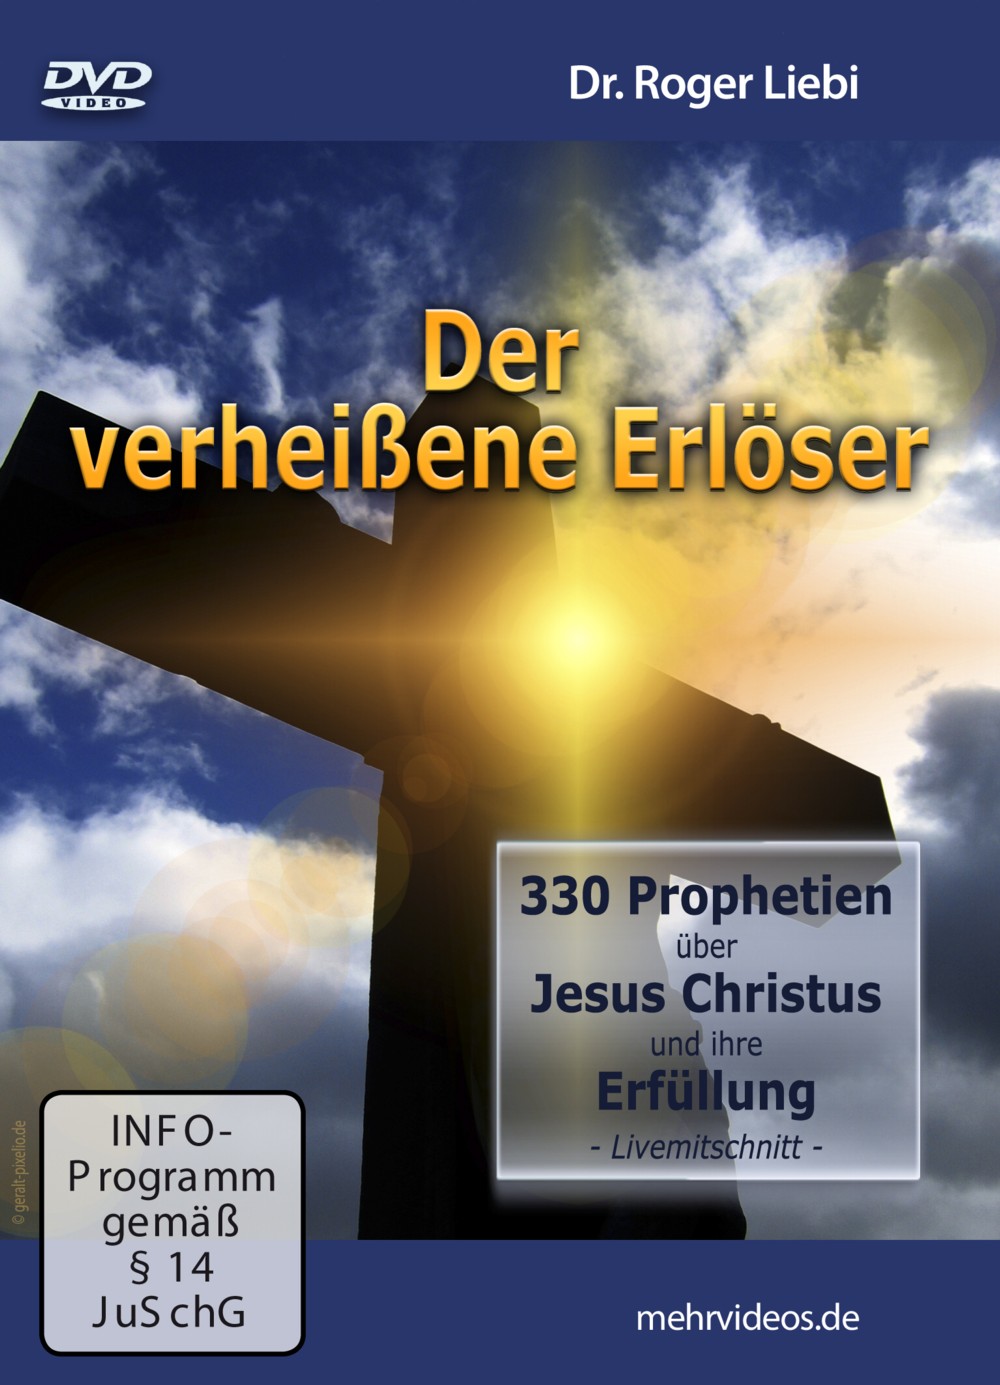 Der verheissene Erlöser - 330 Prophetien über Jesus Christus und ihre Erfüllung - DVD